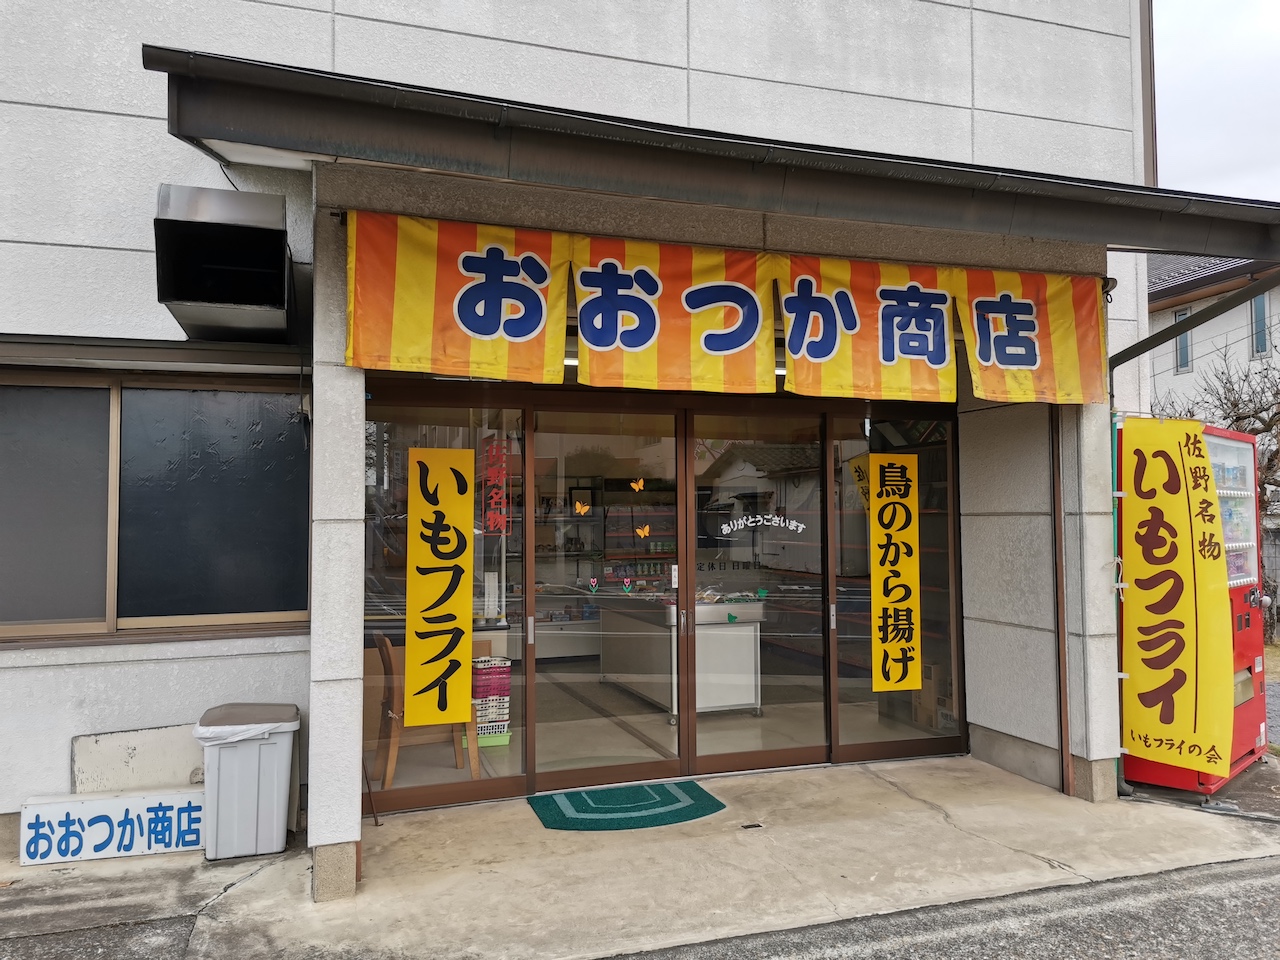 いながきの駄菓子屋探訪２２栃木県佐野市「おおつか商店」ご当地グルメ・いもフライが楽しめる店